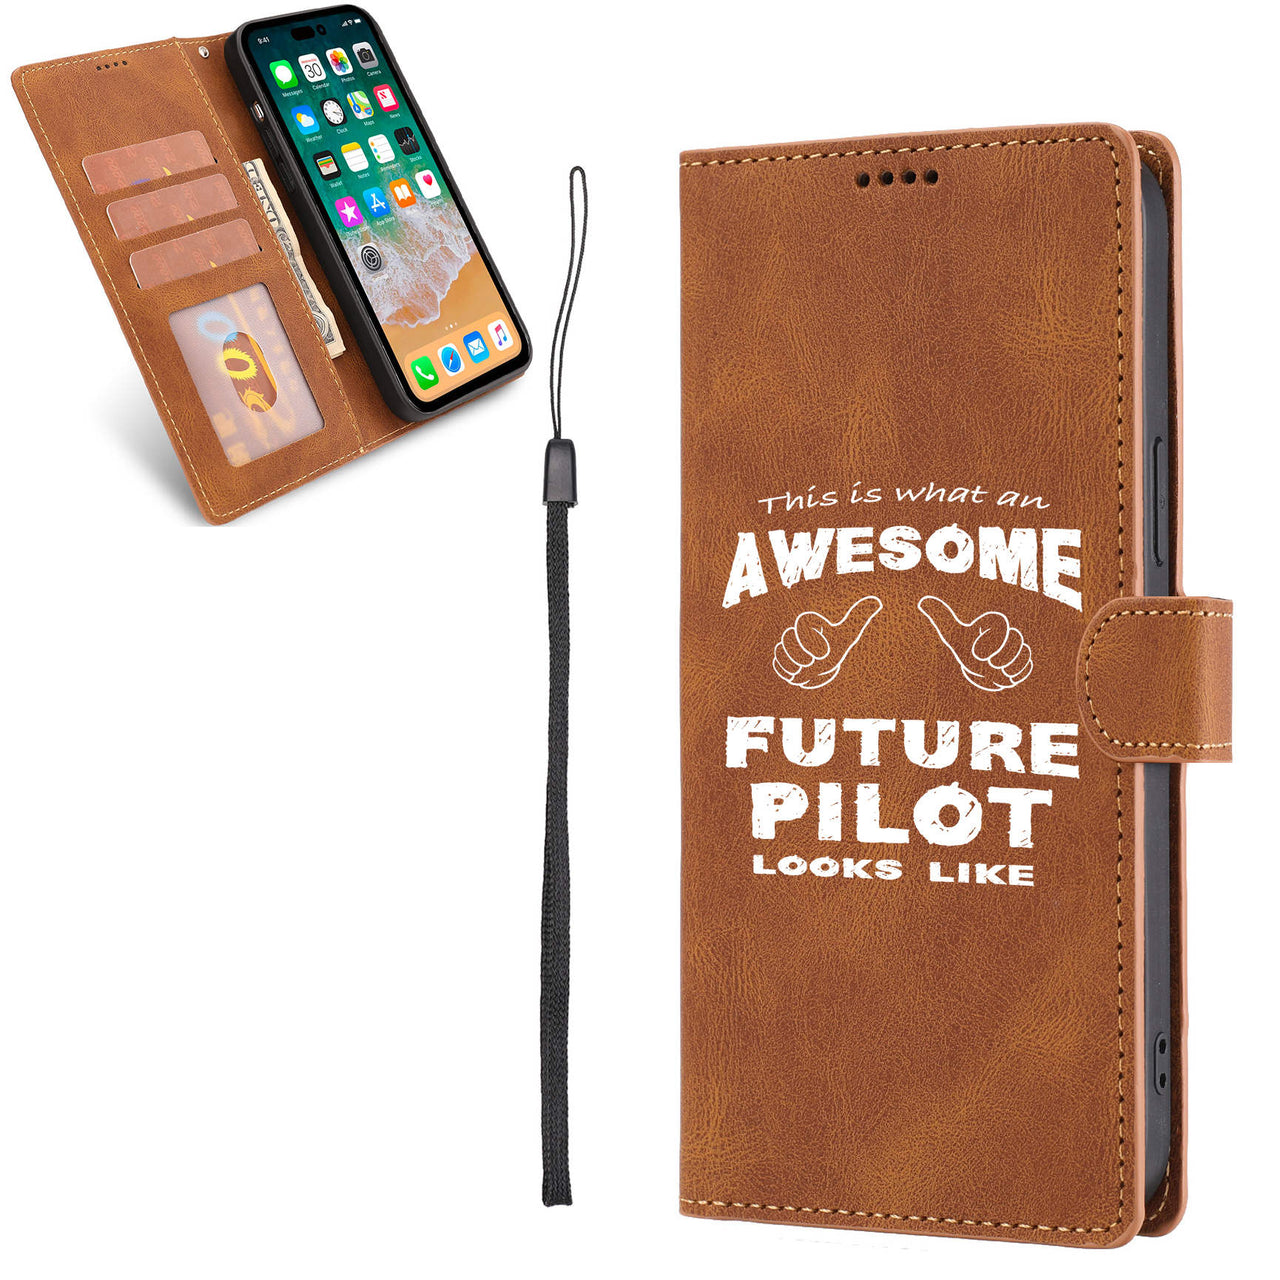 Future Pilot Designed Leather iPhone Cases